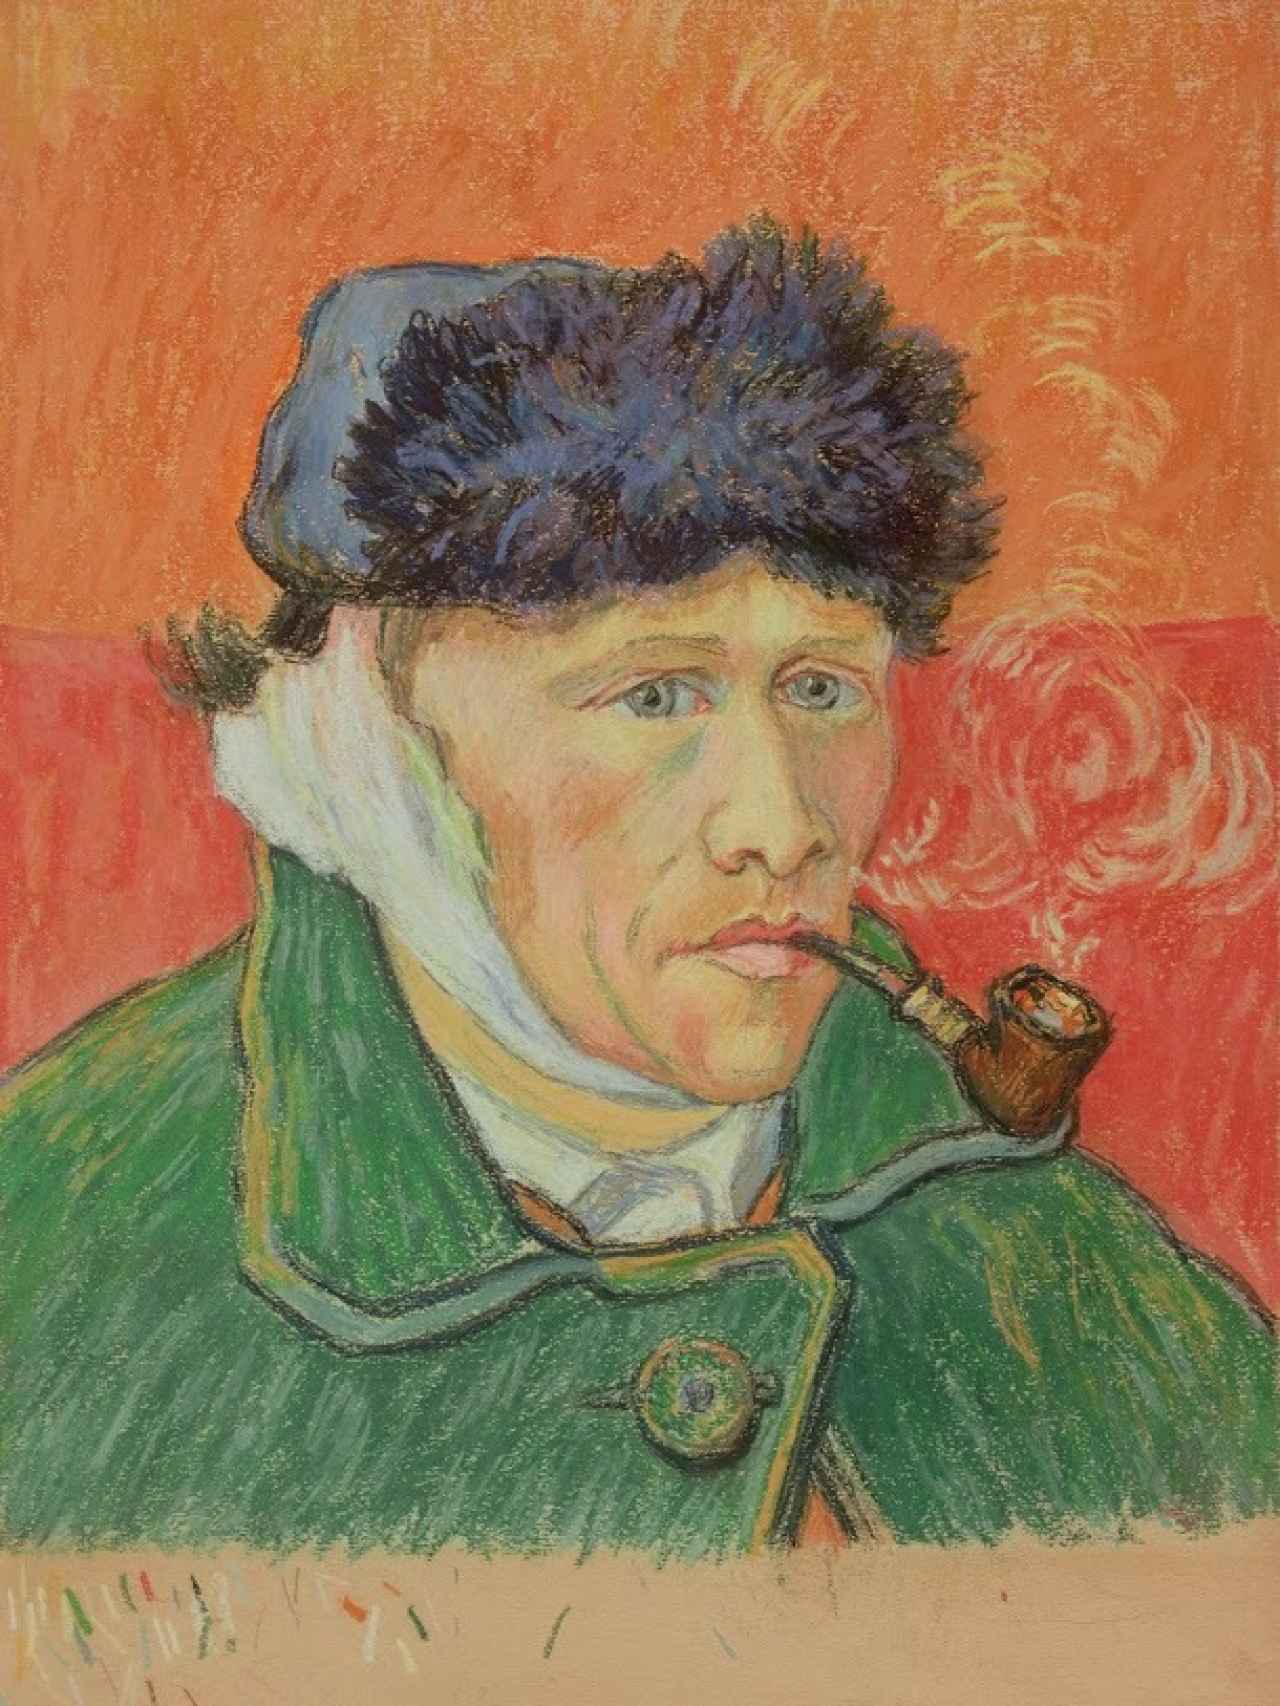 Copia de Emile Schuffenecker del autoretrato de Van Gogh con la oreja cortada.